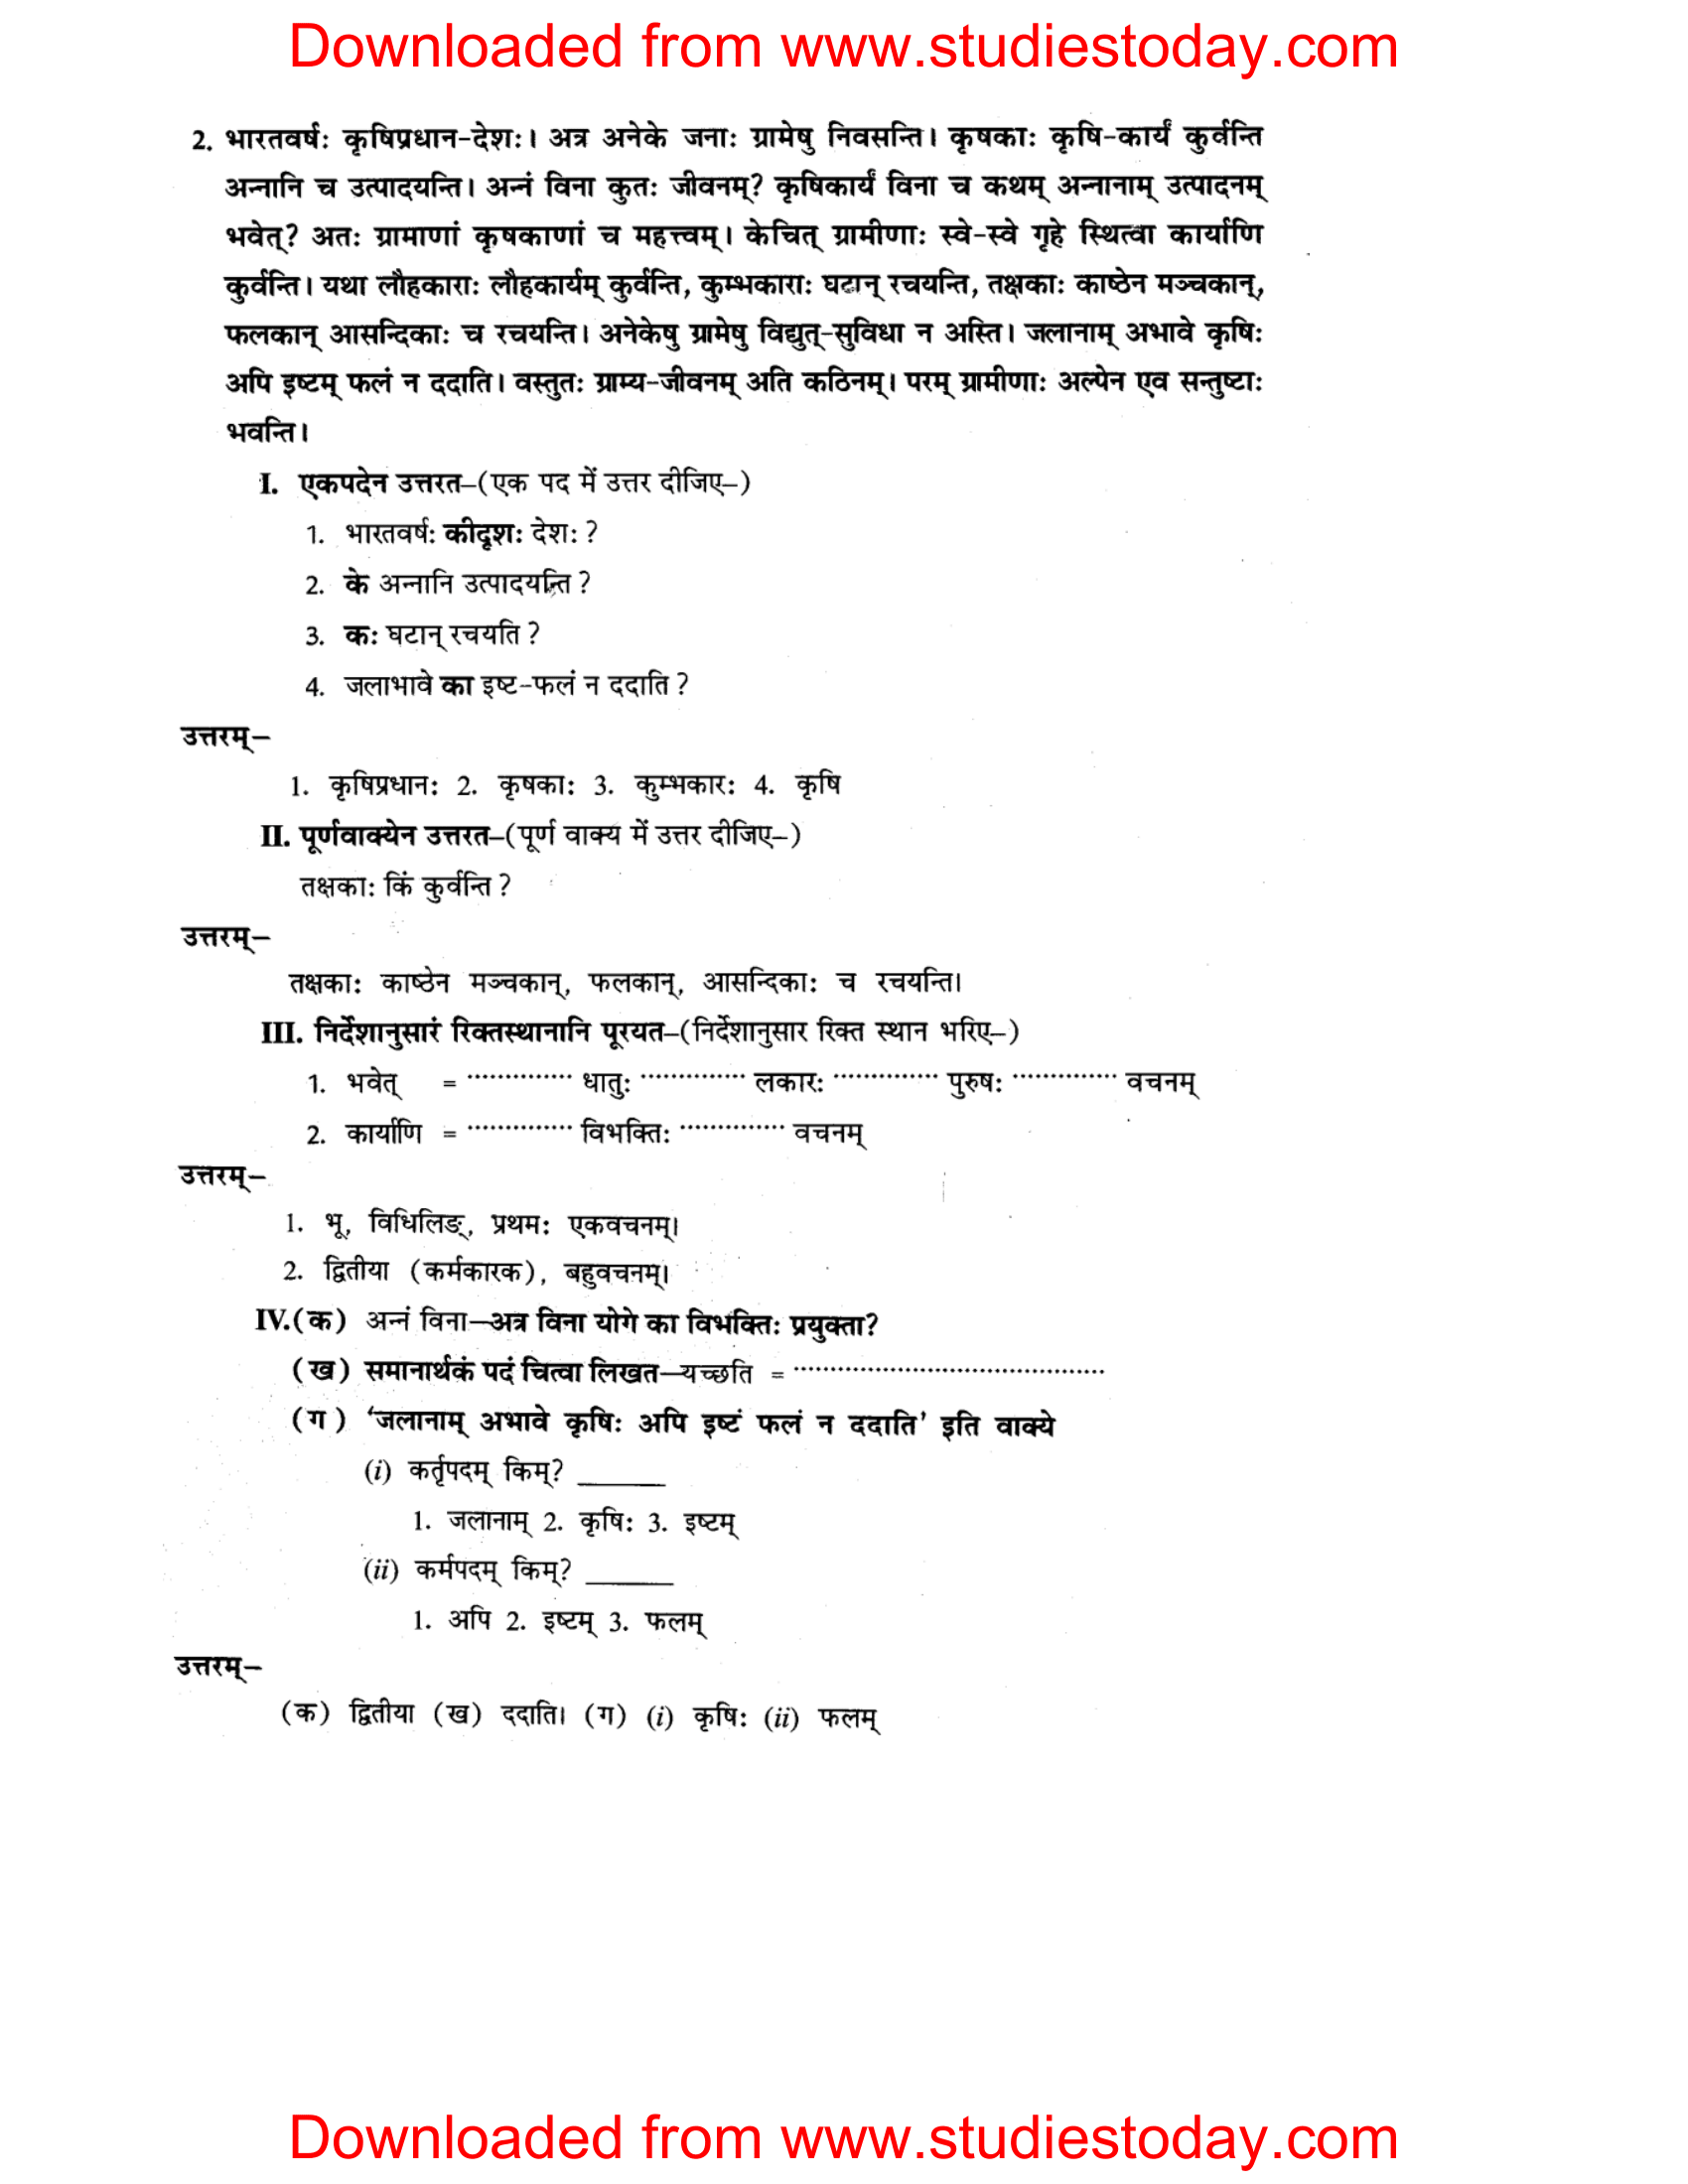 ncert-solutions-class-8-sanskrit-chapter-14-apthint-avbodhan-abhyas-2